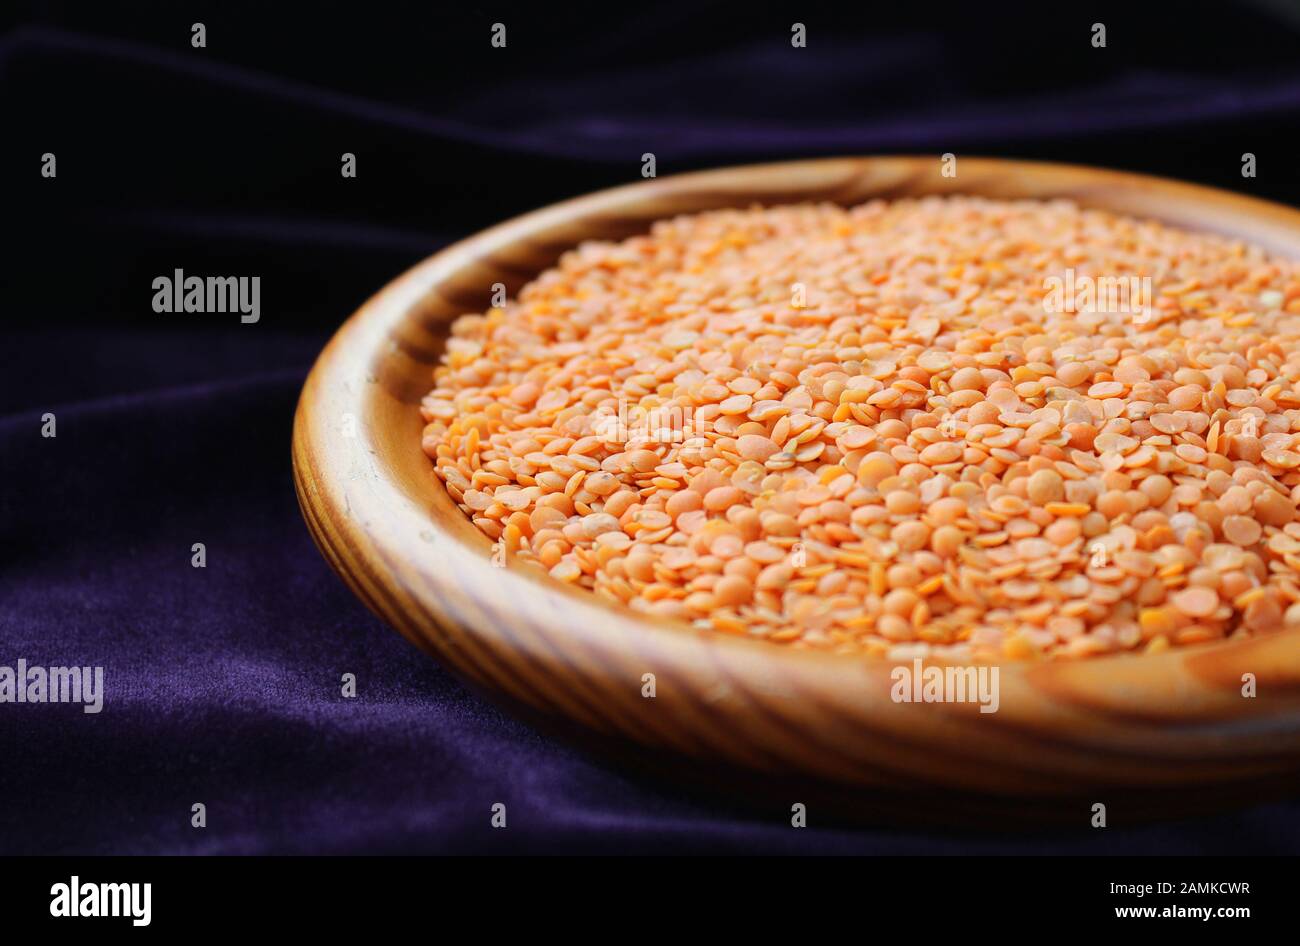 Primo piano di una ciotola di legno contenente lenticchie rosse, (Lens culinaris) contro un backgroound scuro, con spazio di copia. Messa a fuoco selettiva. Foto Stock